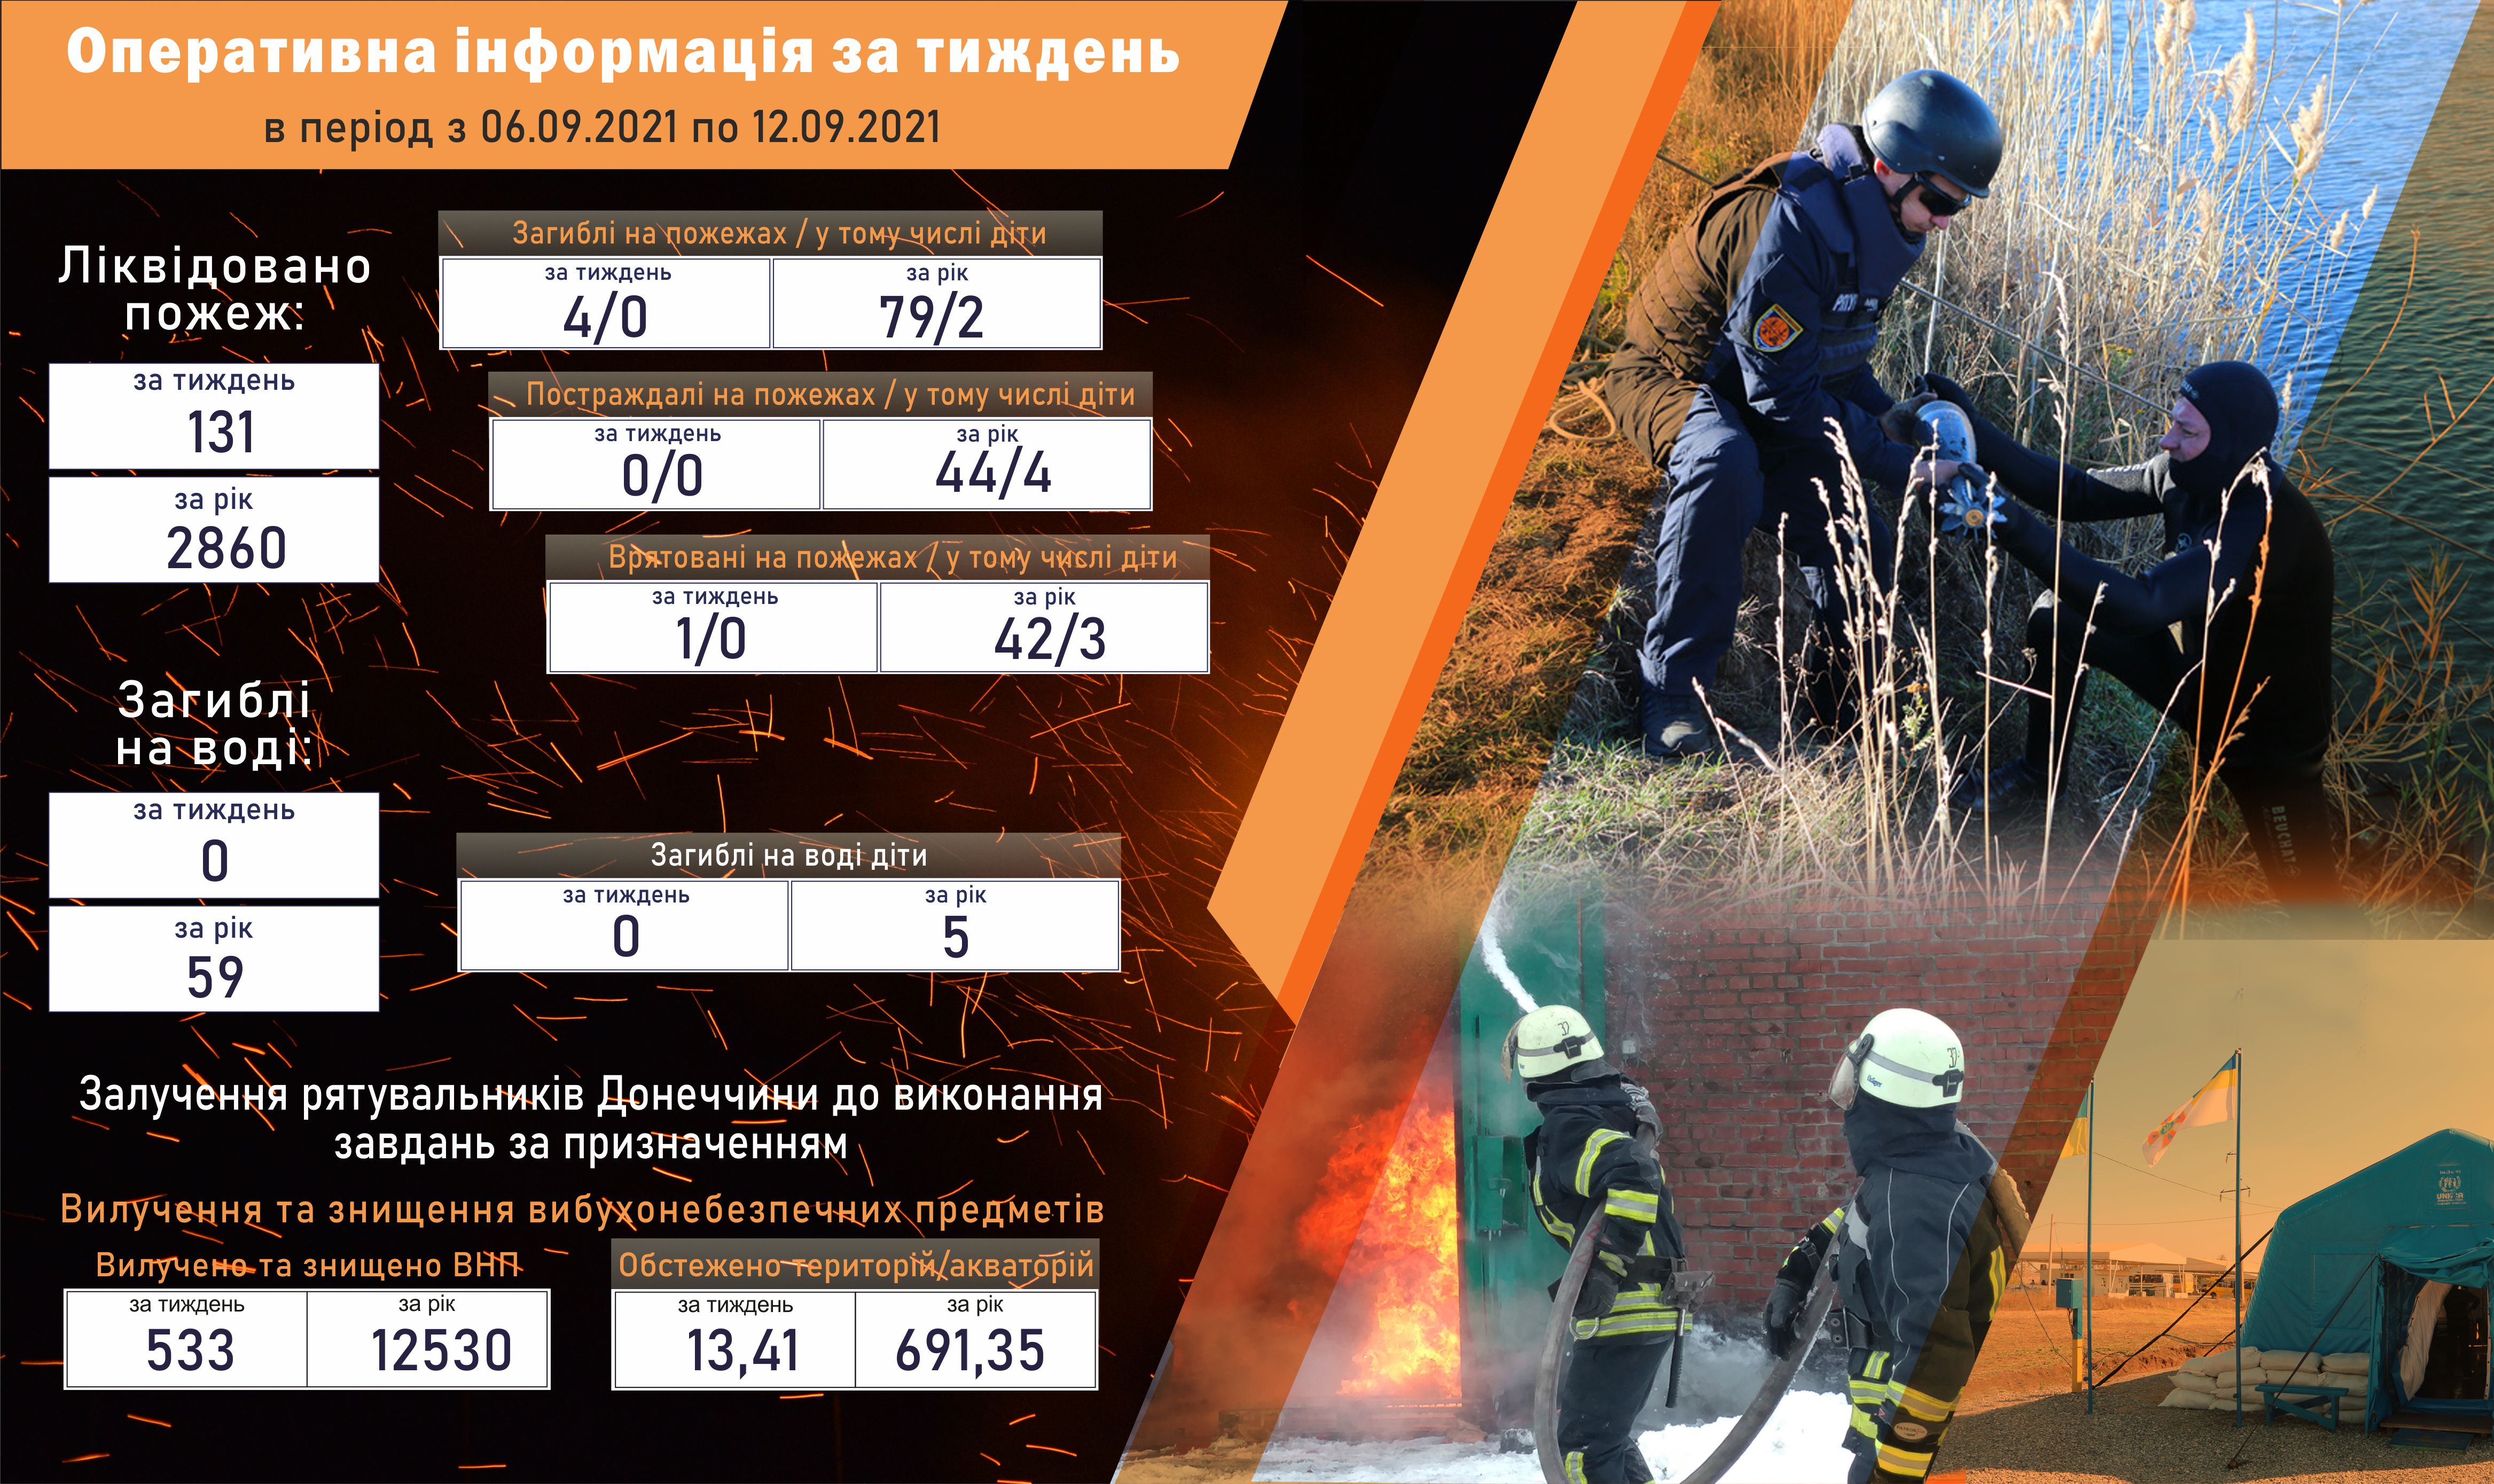 Четыре жителя Донецкой области стали жертвами пожаров